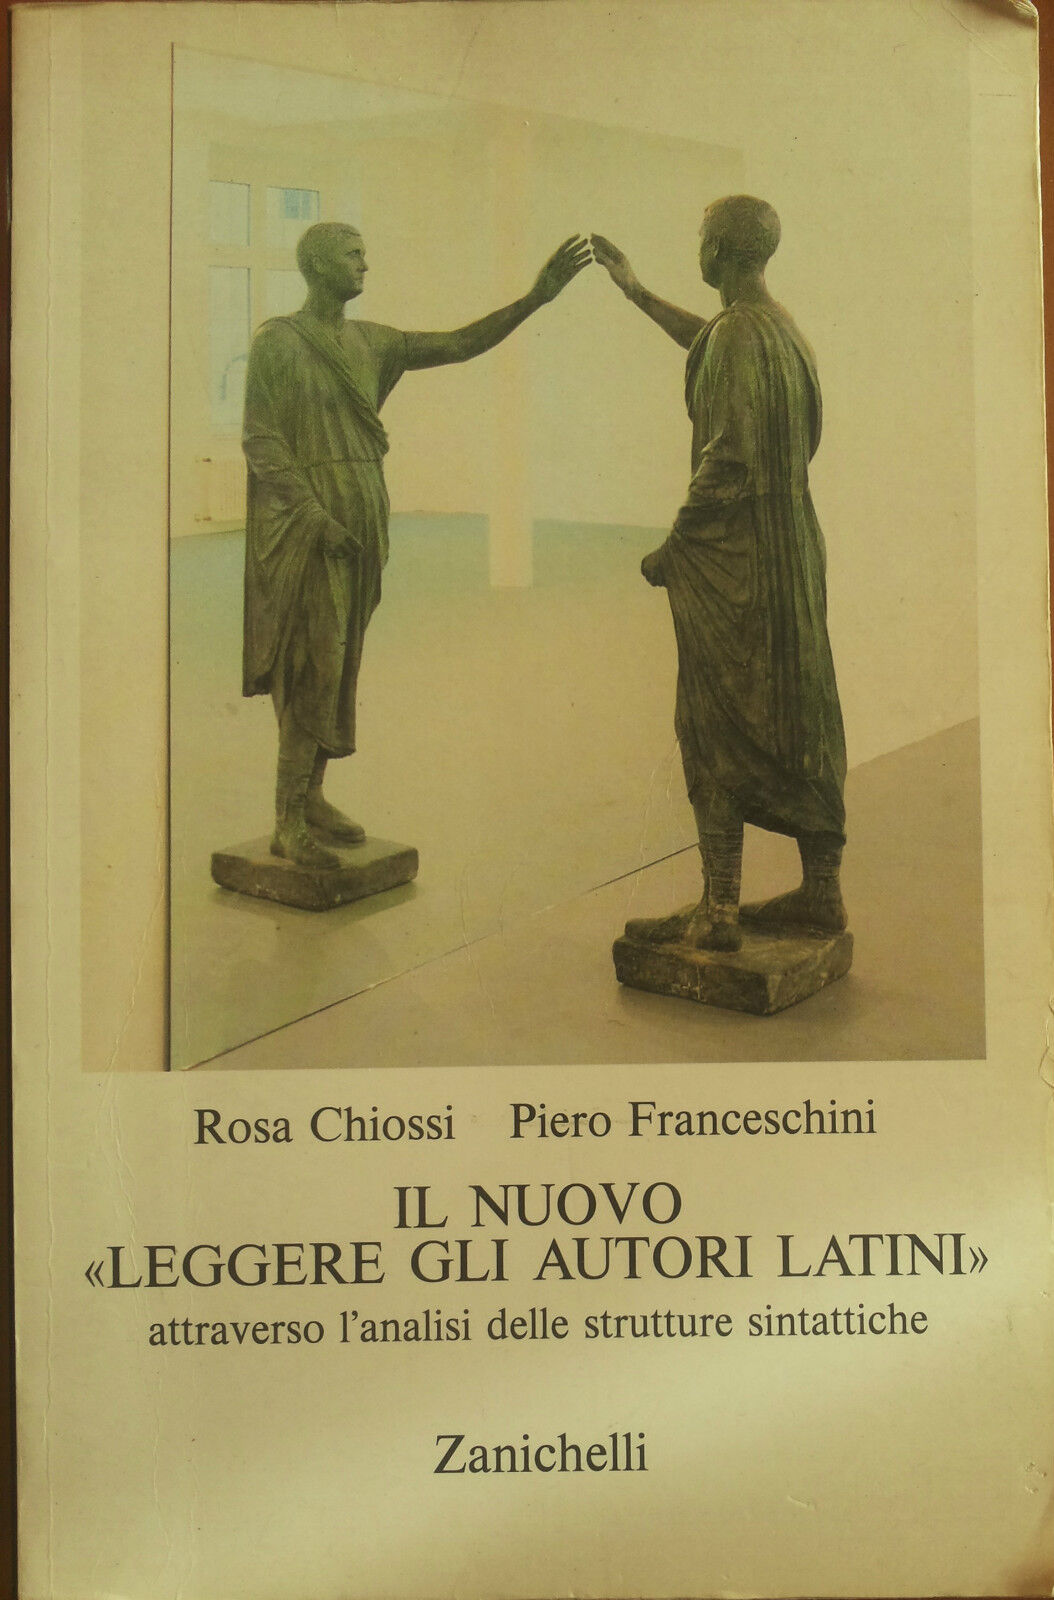 Il nuovo leggere gli autori latini - Chiossi, Franceschini - Zanichelli,1993 - A